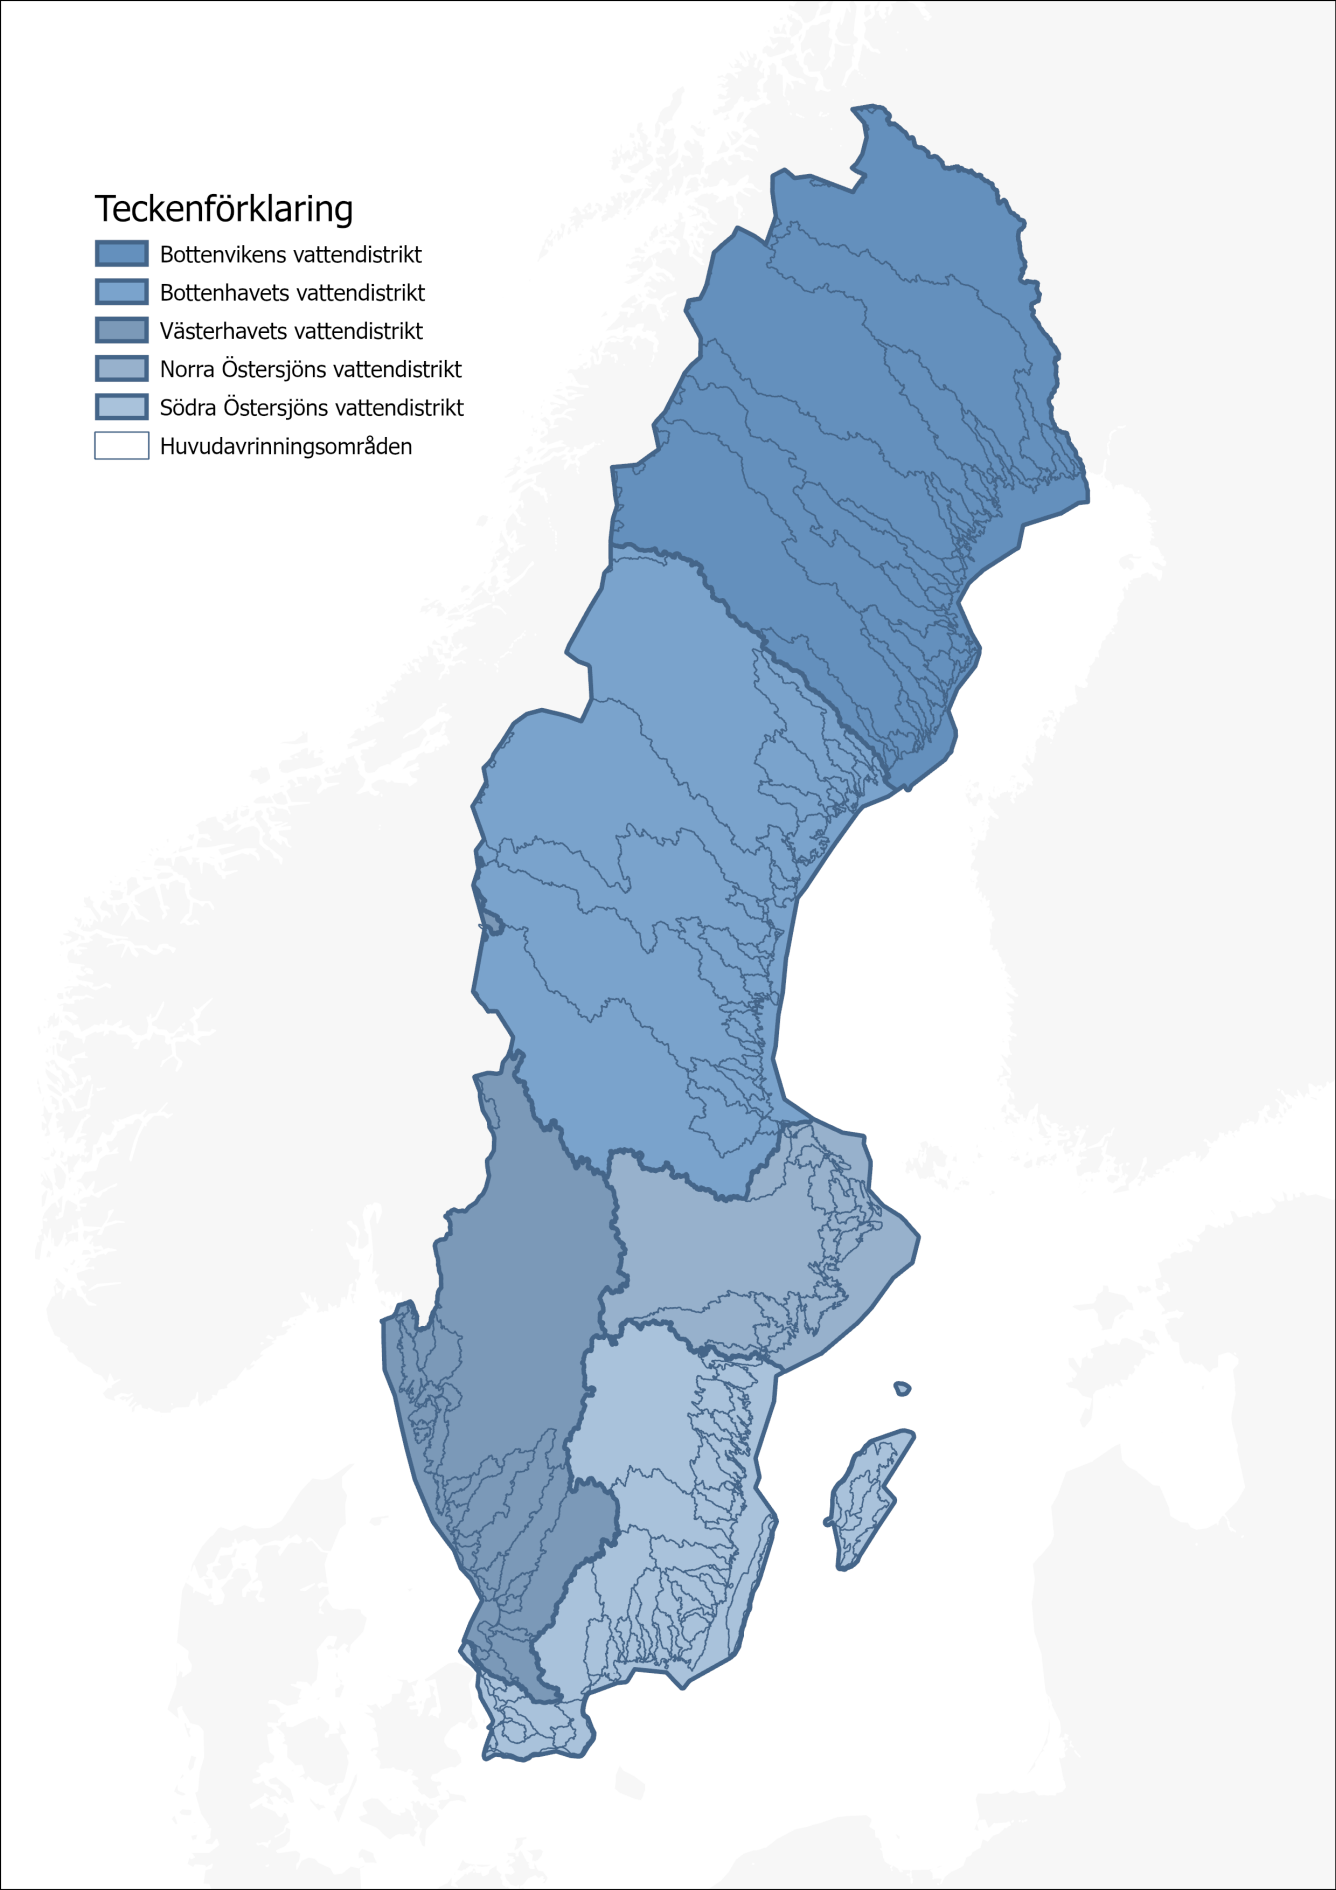 Sverigekarta indelad i fem vattendistrikt: Bottenvikens, Bottenhavets, Västerhavets, Norra Östersjöns och Södra Östersjöns.